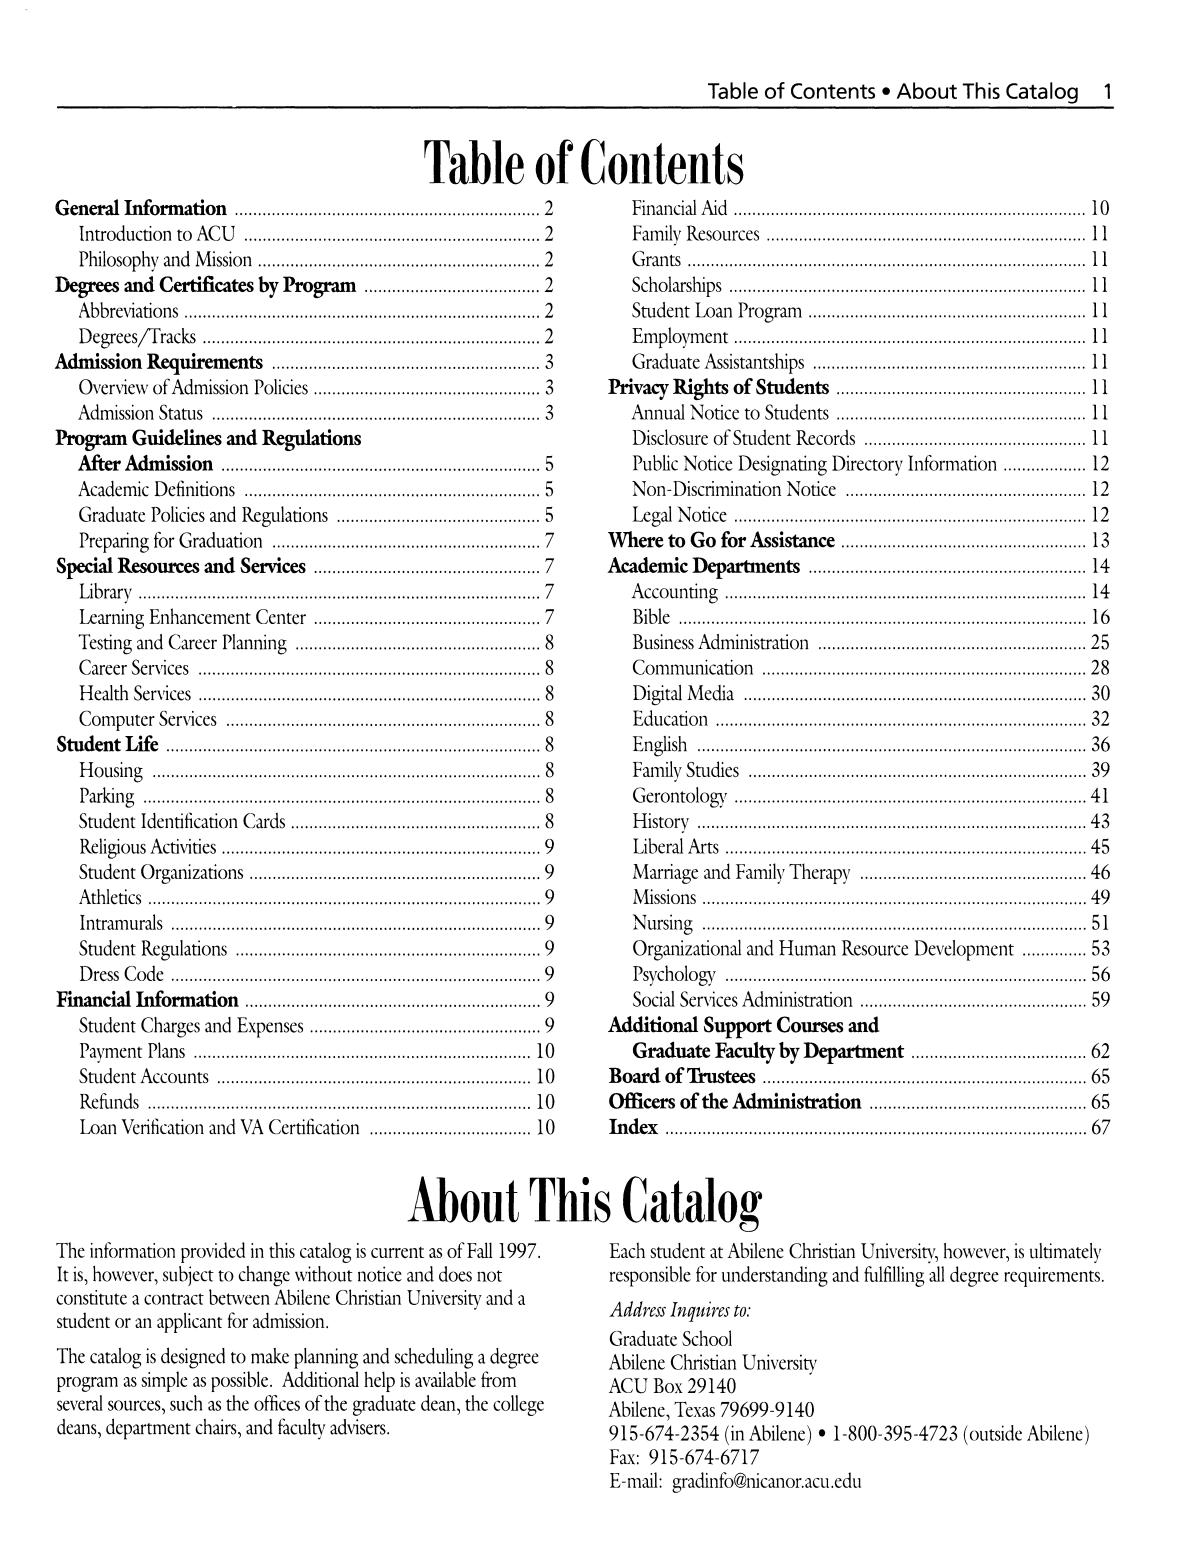 Catalog of Abilene Christian University, 1998-2000
                                                
                                                    1
                                                